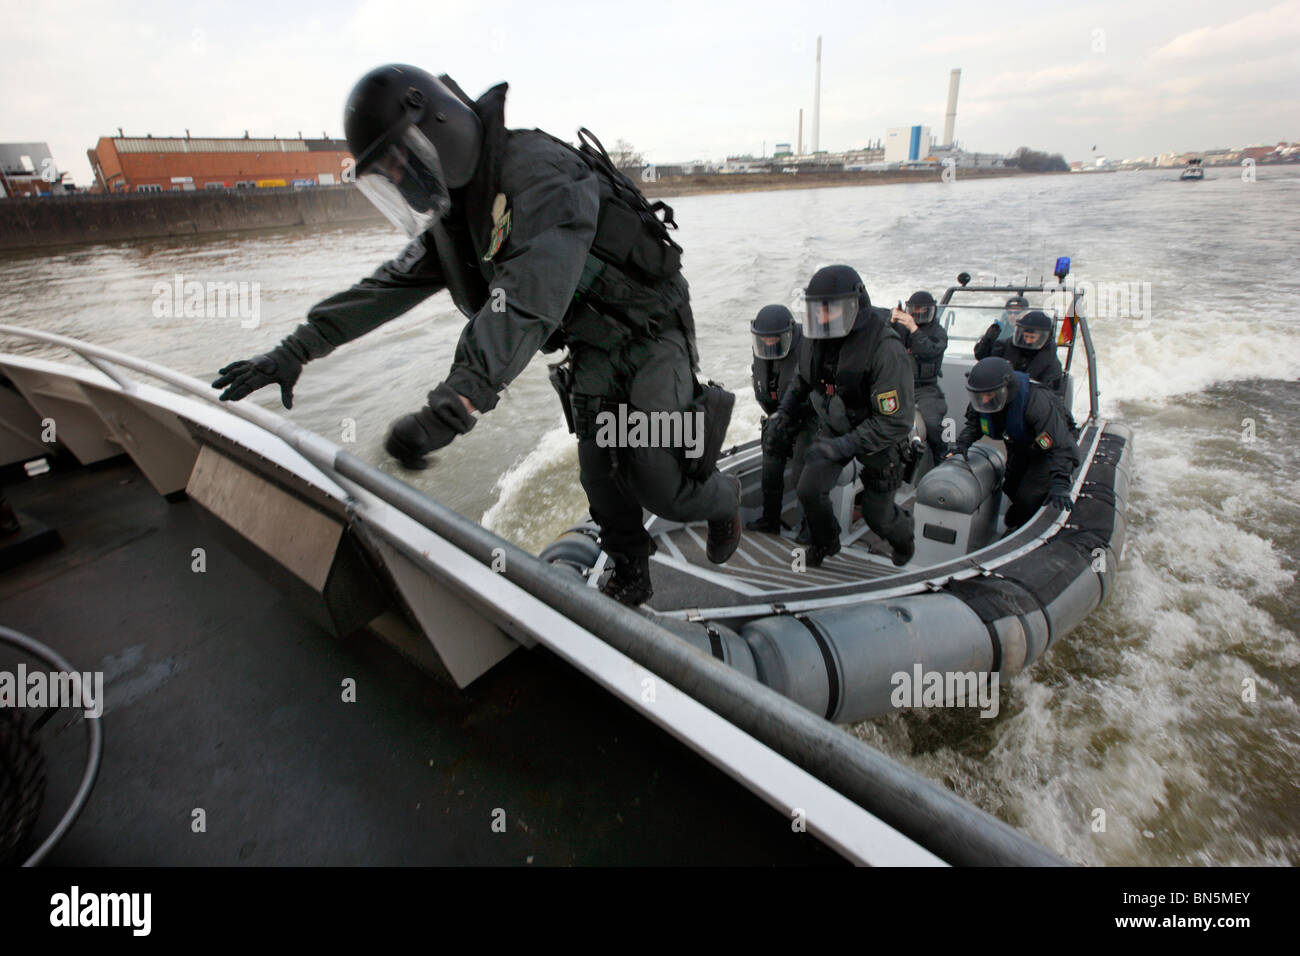 Polizei SWAT-Team bei einer Übung. Anti-Terrorismus und Kriminalität Einheit zwingt die Spezialeinheiten der Polizei. Sturm auf einem Fahrgastschiff am Rhein. Stockfoto